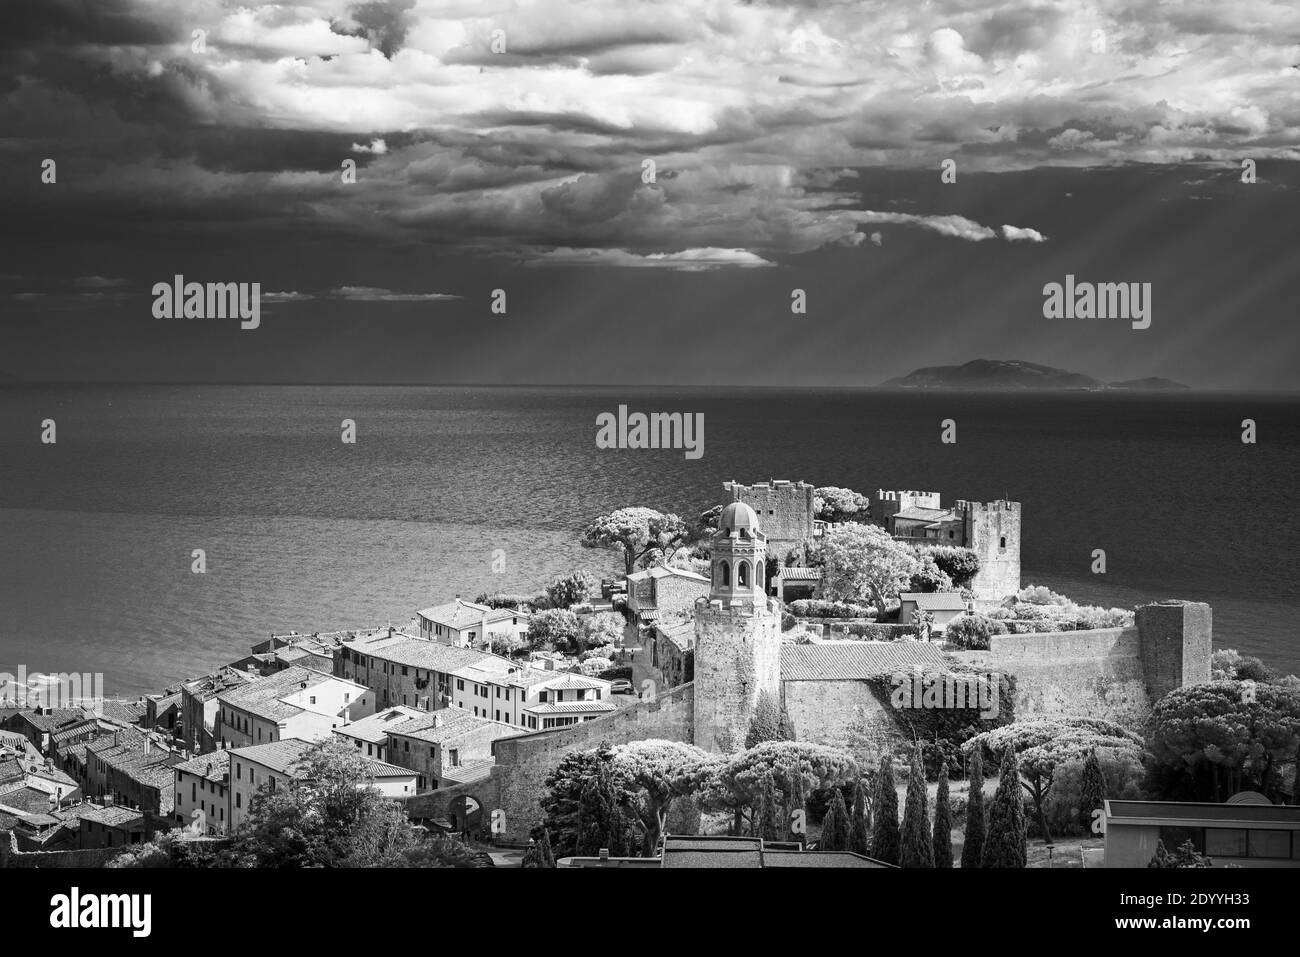 Vue sur le château, la ville et le port de Castiglione della Pescaia à l'île de Giglio dans la mer Tyrrhénienne, Maremme, Toscane, Italie Banque D'Images